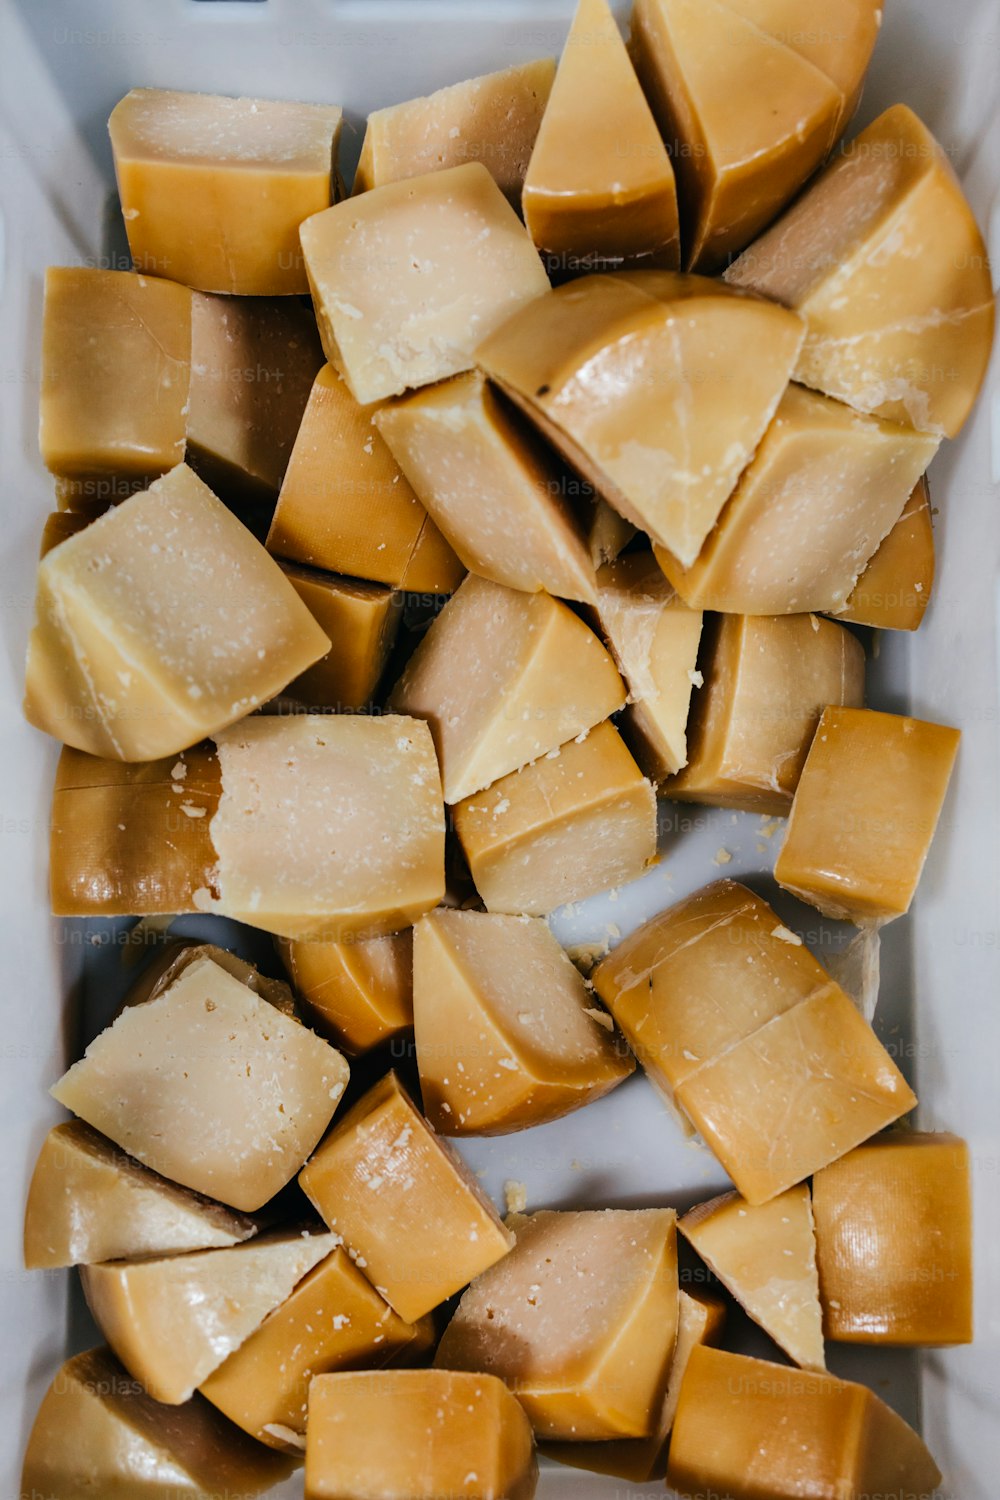 Details aus der traditionellen Käse- und Molkereifabrik. Stücke von geschnittenem köstlichem Käse bereit zum Verpacken.